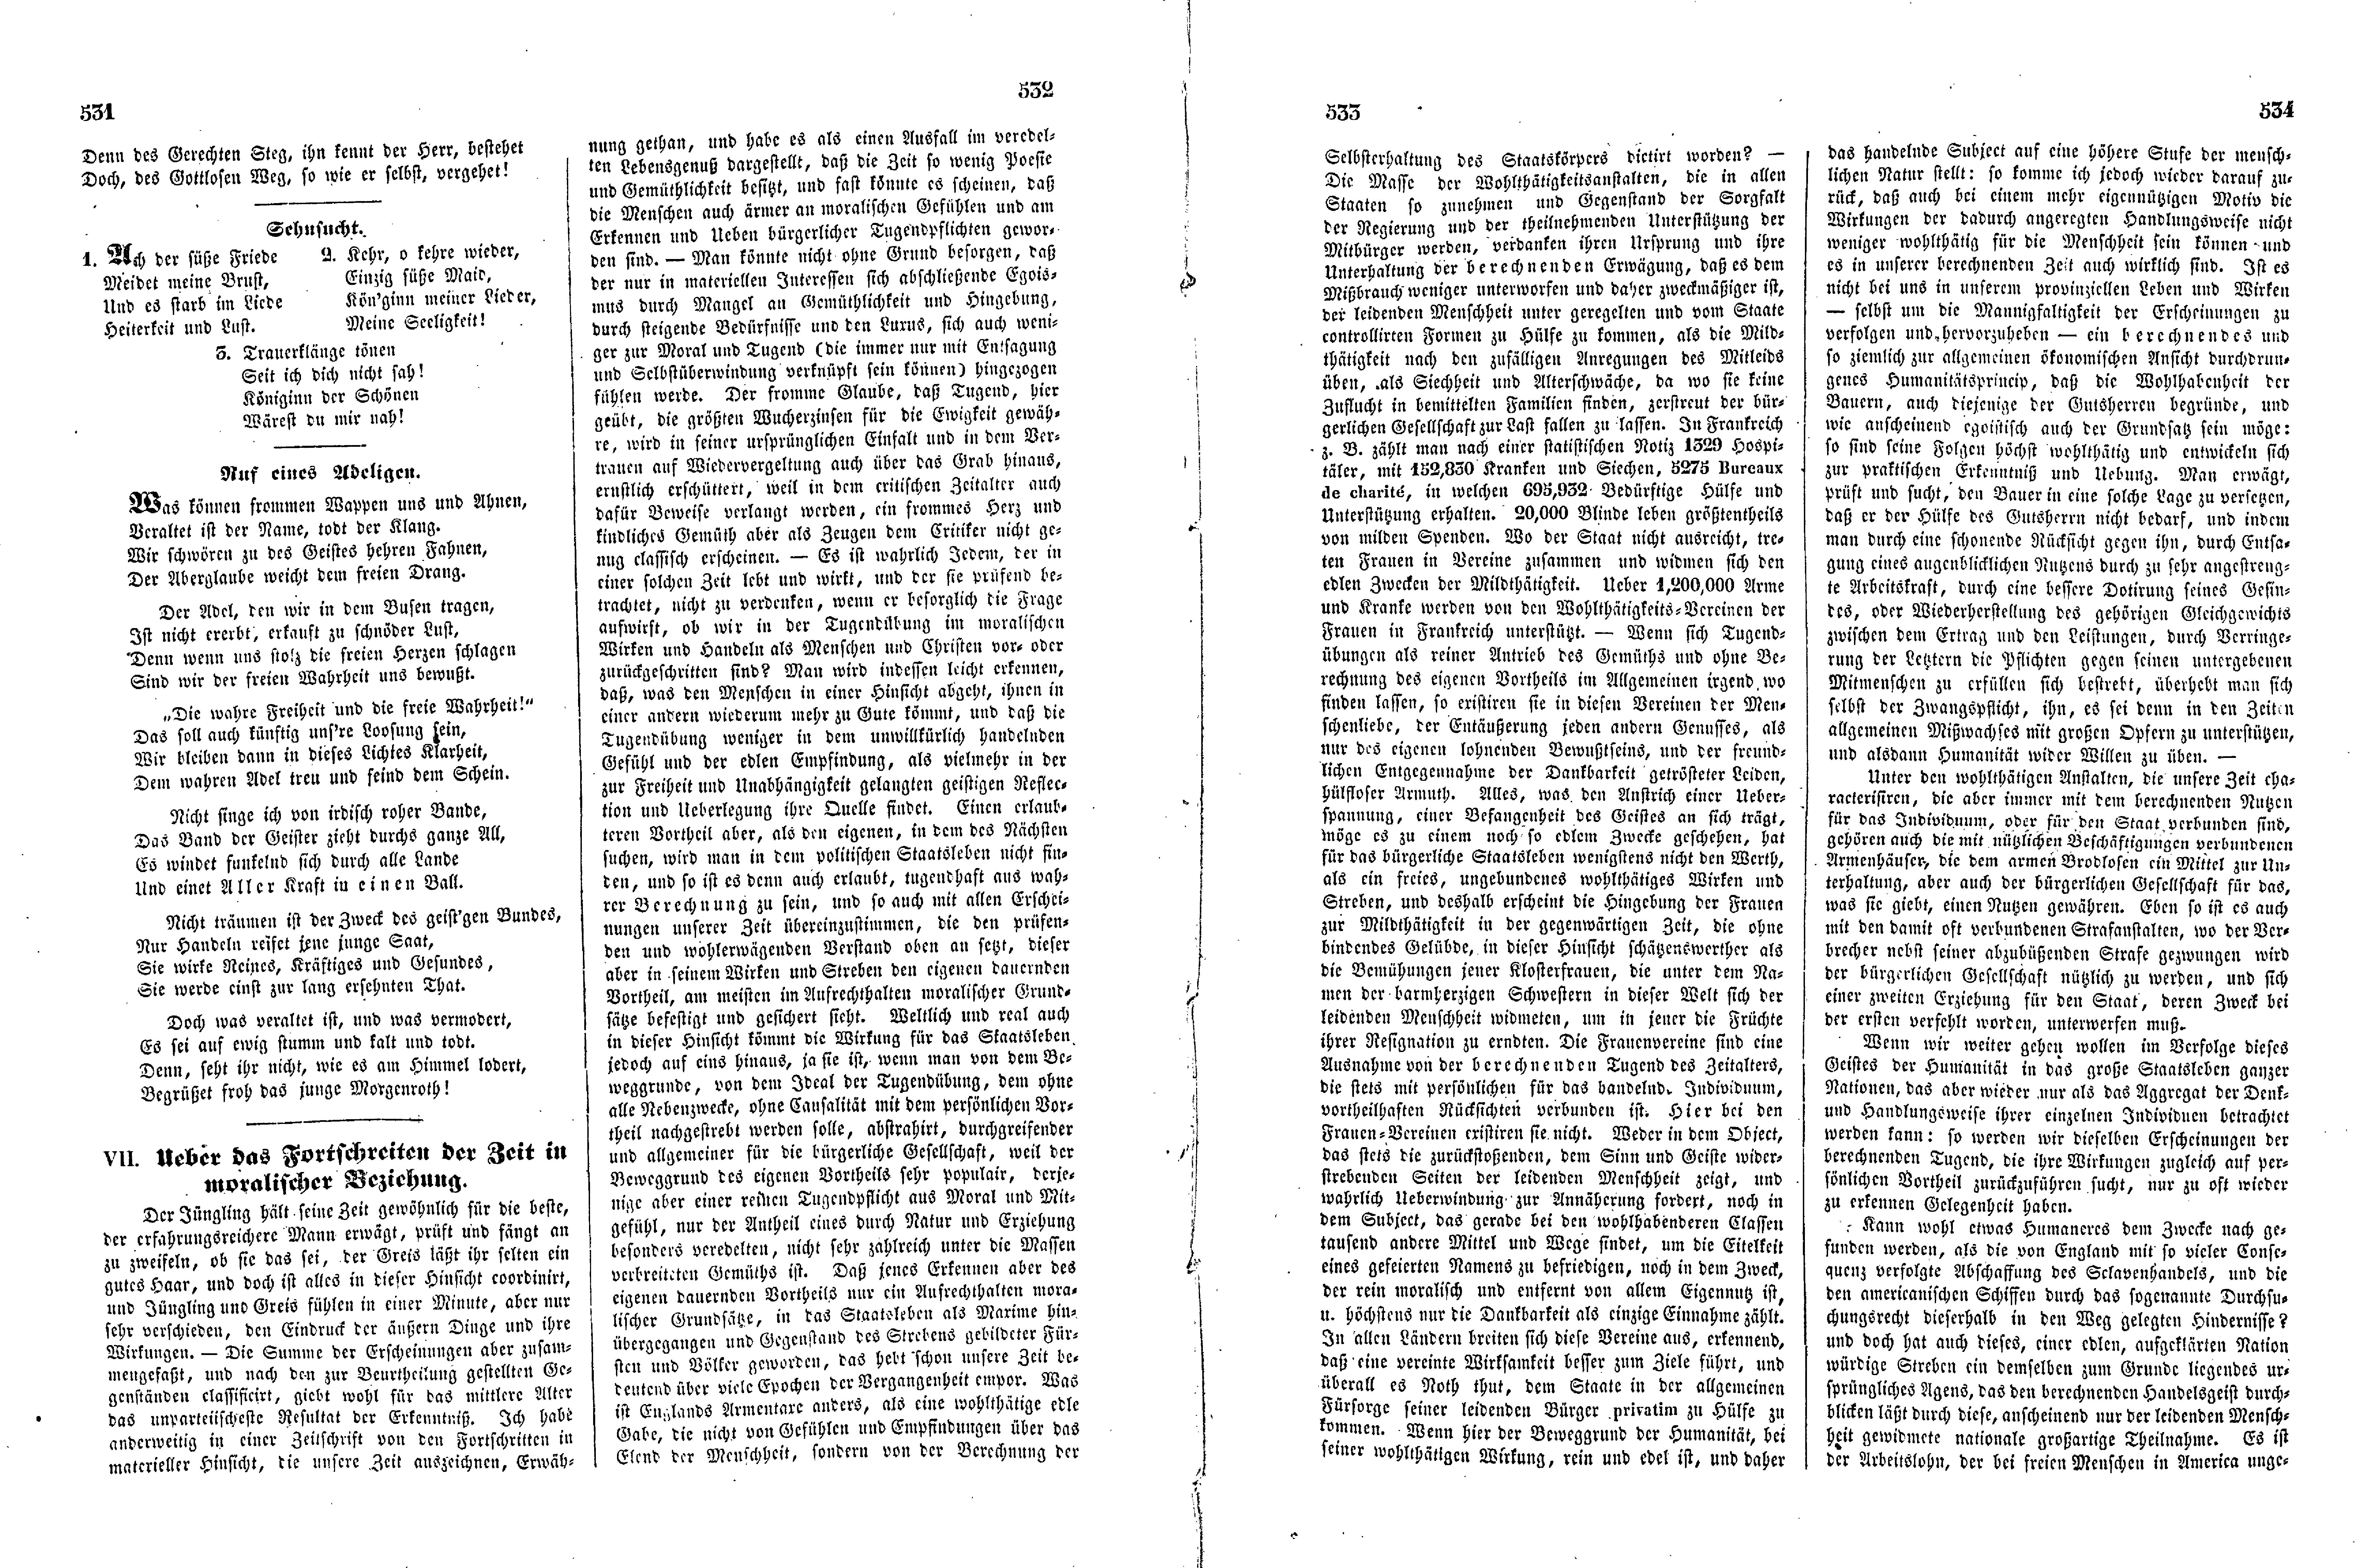 Das Inland [11] (1846) | 138. (531-534) Põhitekst